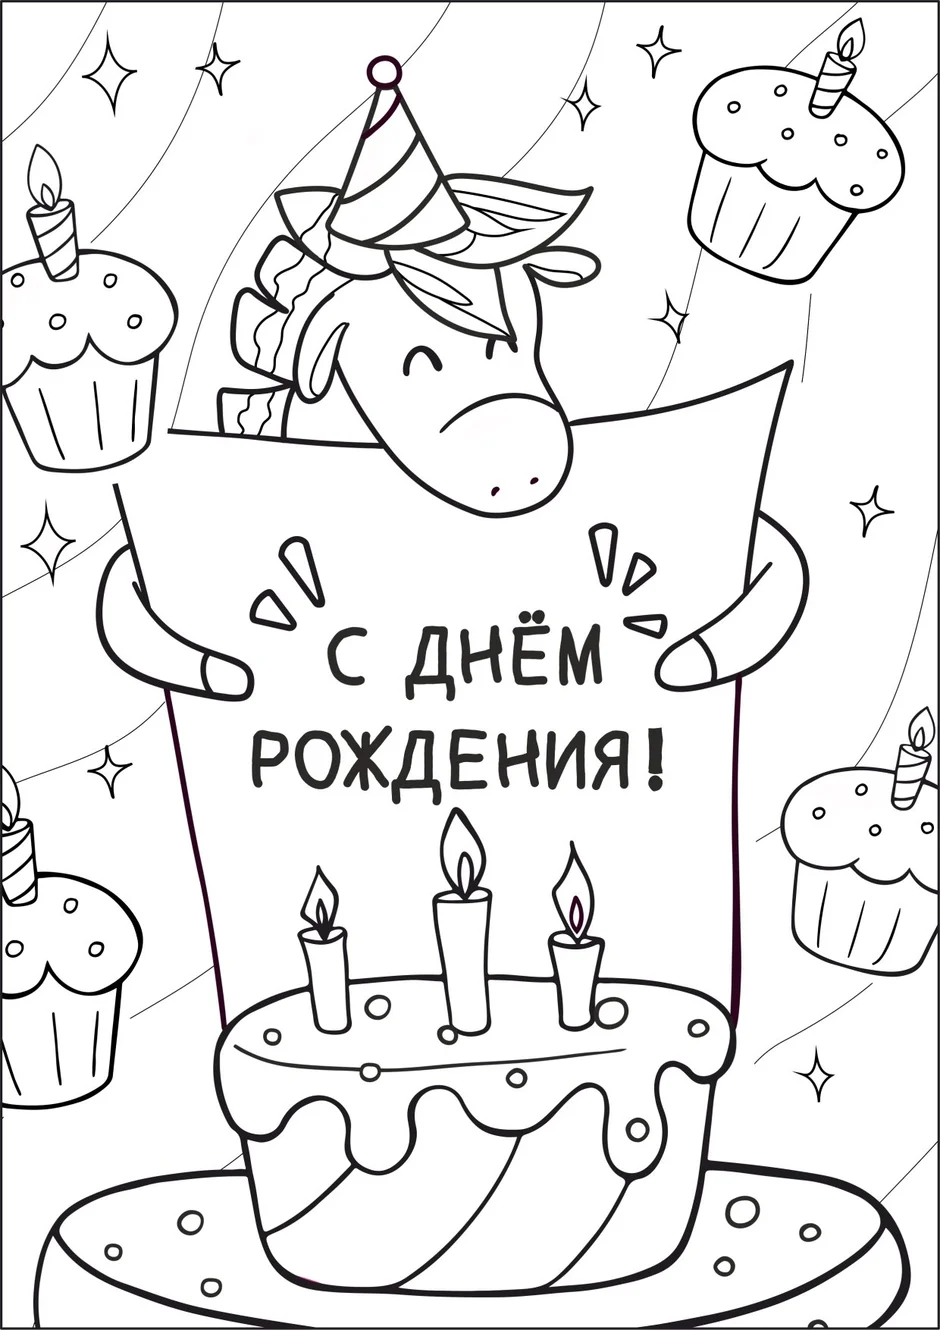 Изображения по запросу Плакат день рождения ребенка